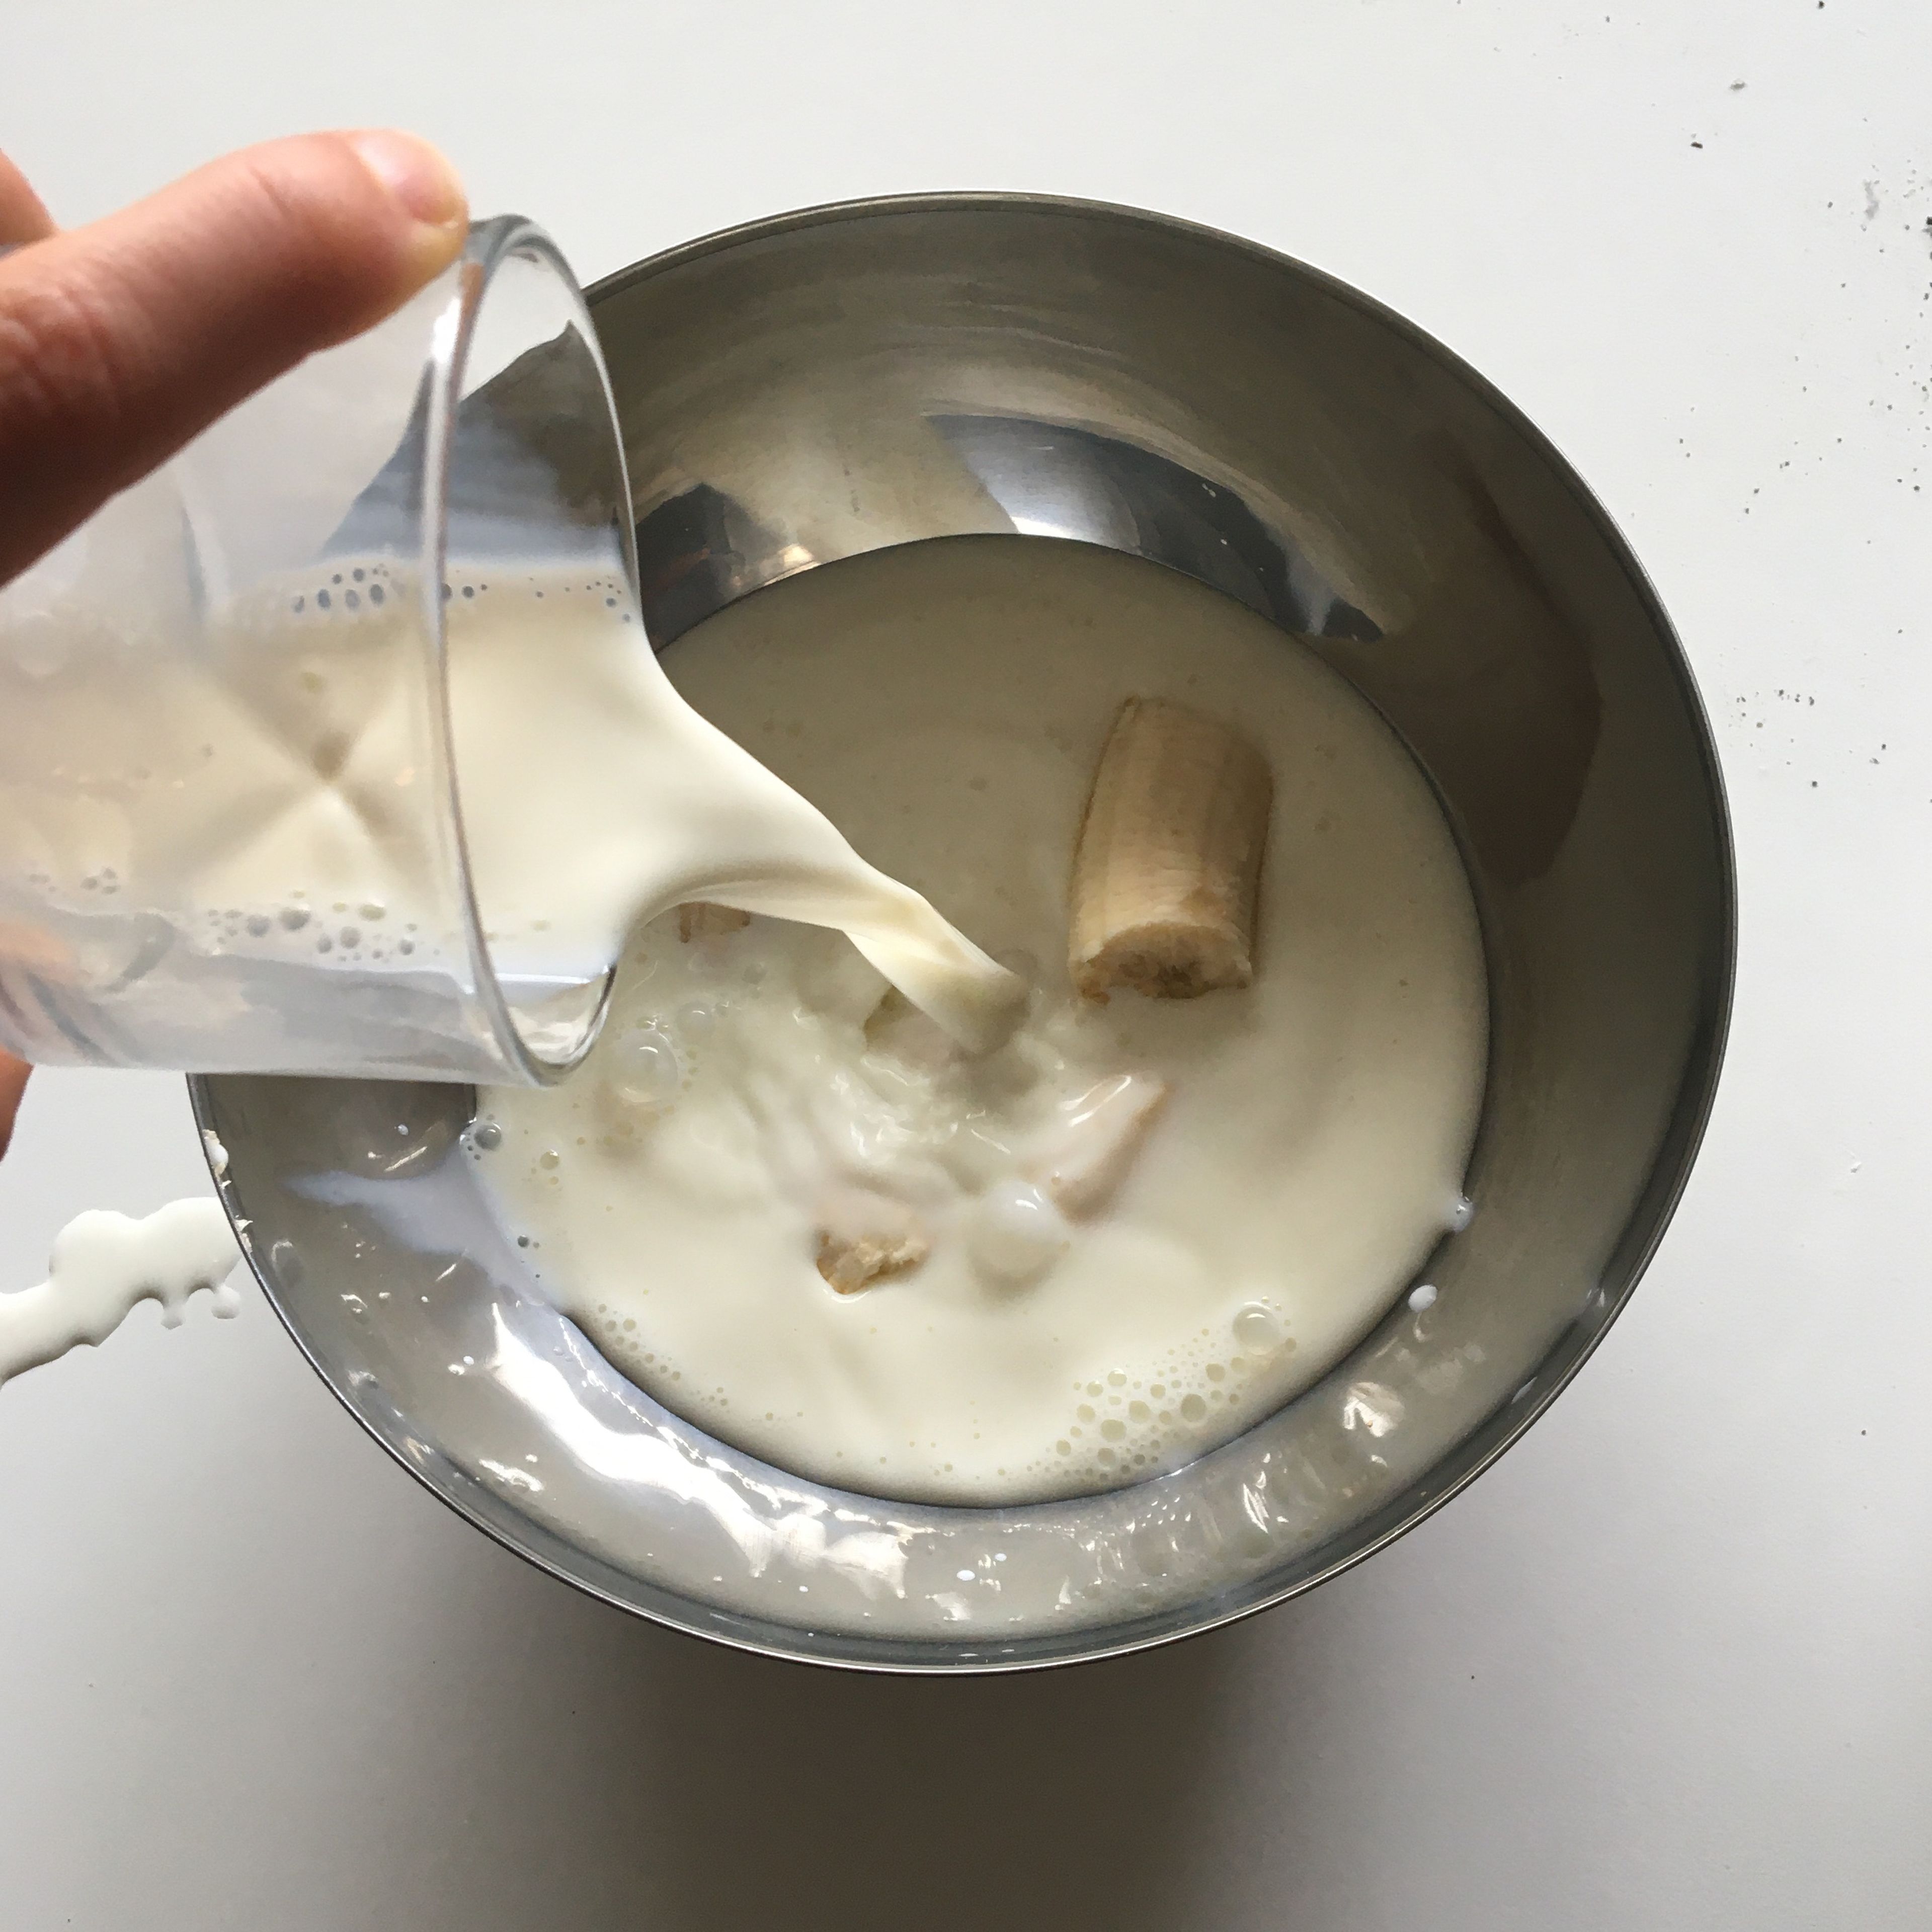 Milch hinzufügen und mit Stabmixer mixen bis cremig, flüssige Bananenmilch entsteht.